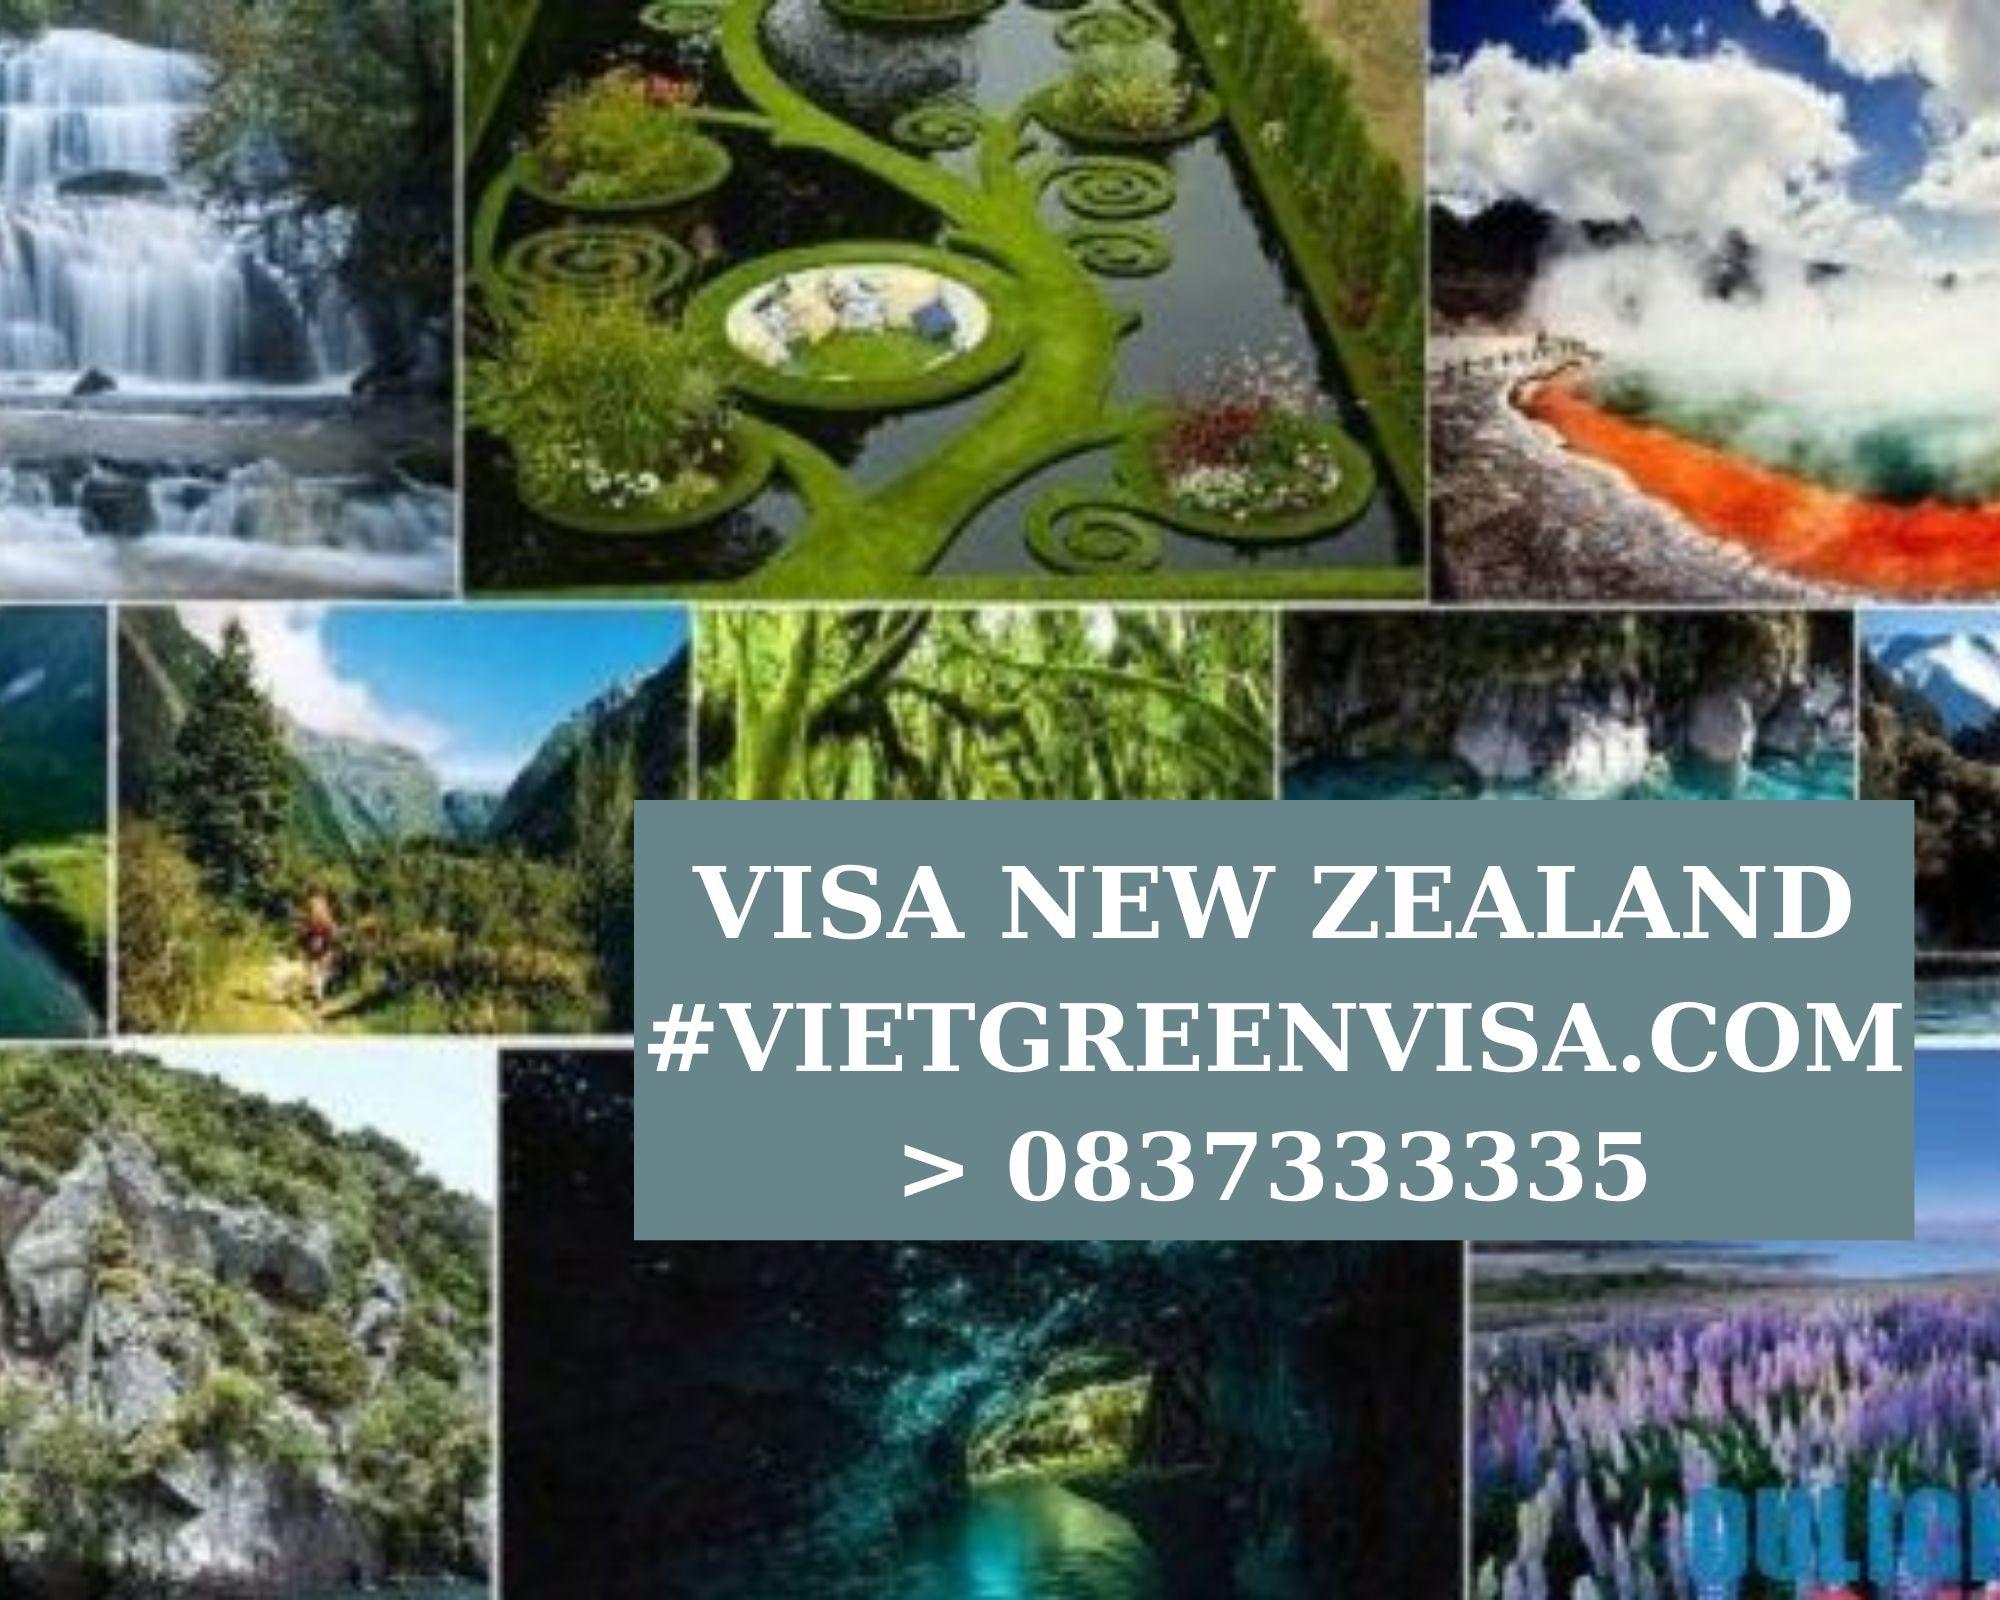 Làm Visa New Zealand thăm thân uy tín, nhanh chóng, giá rẻ